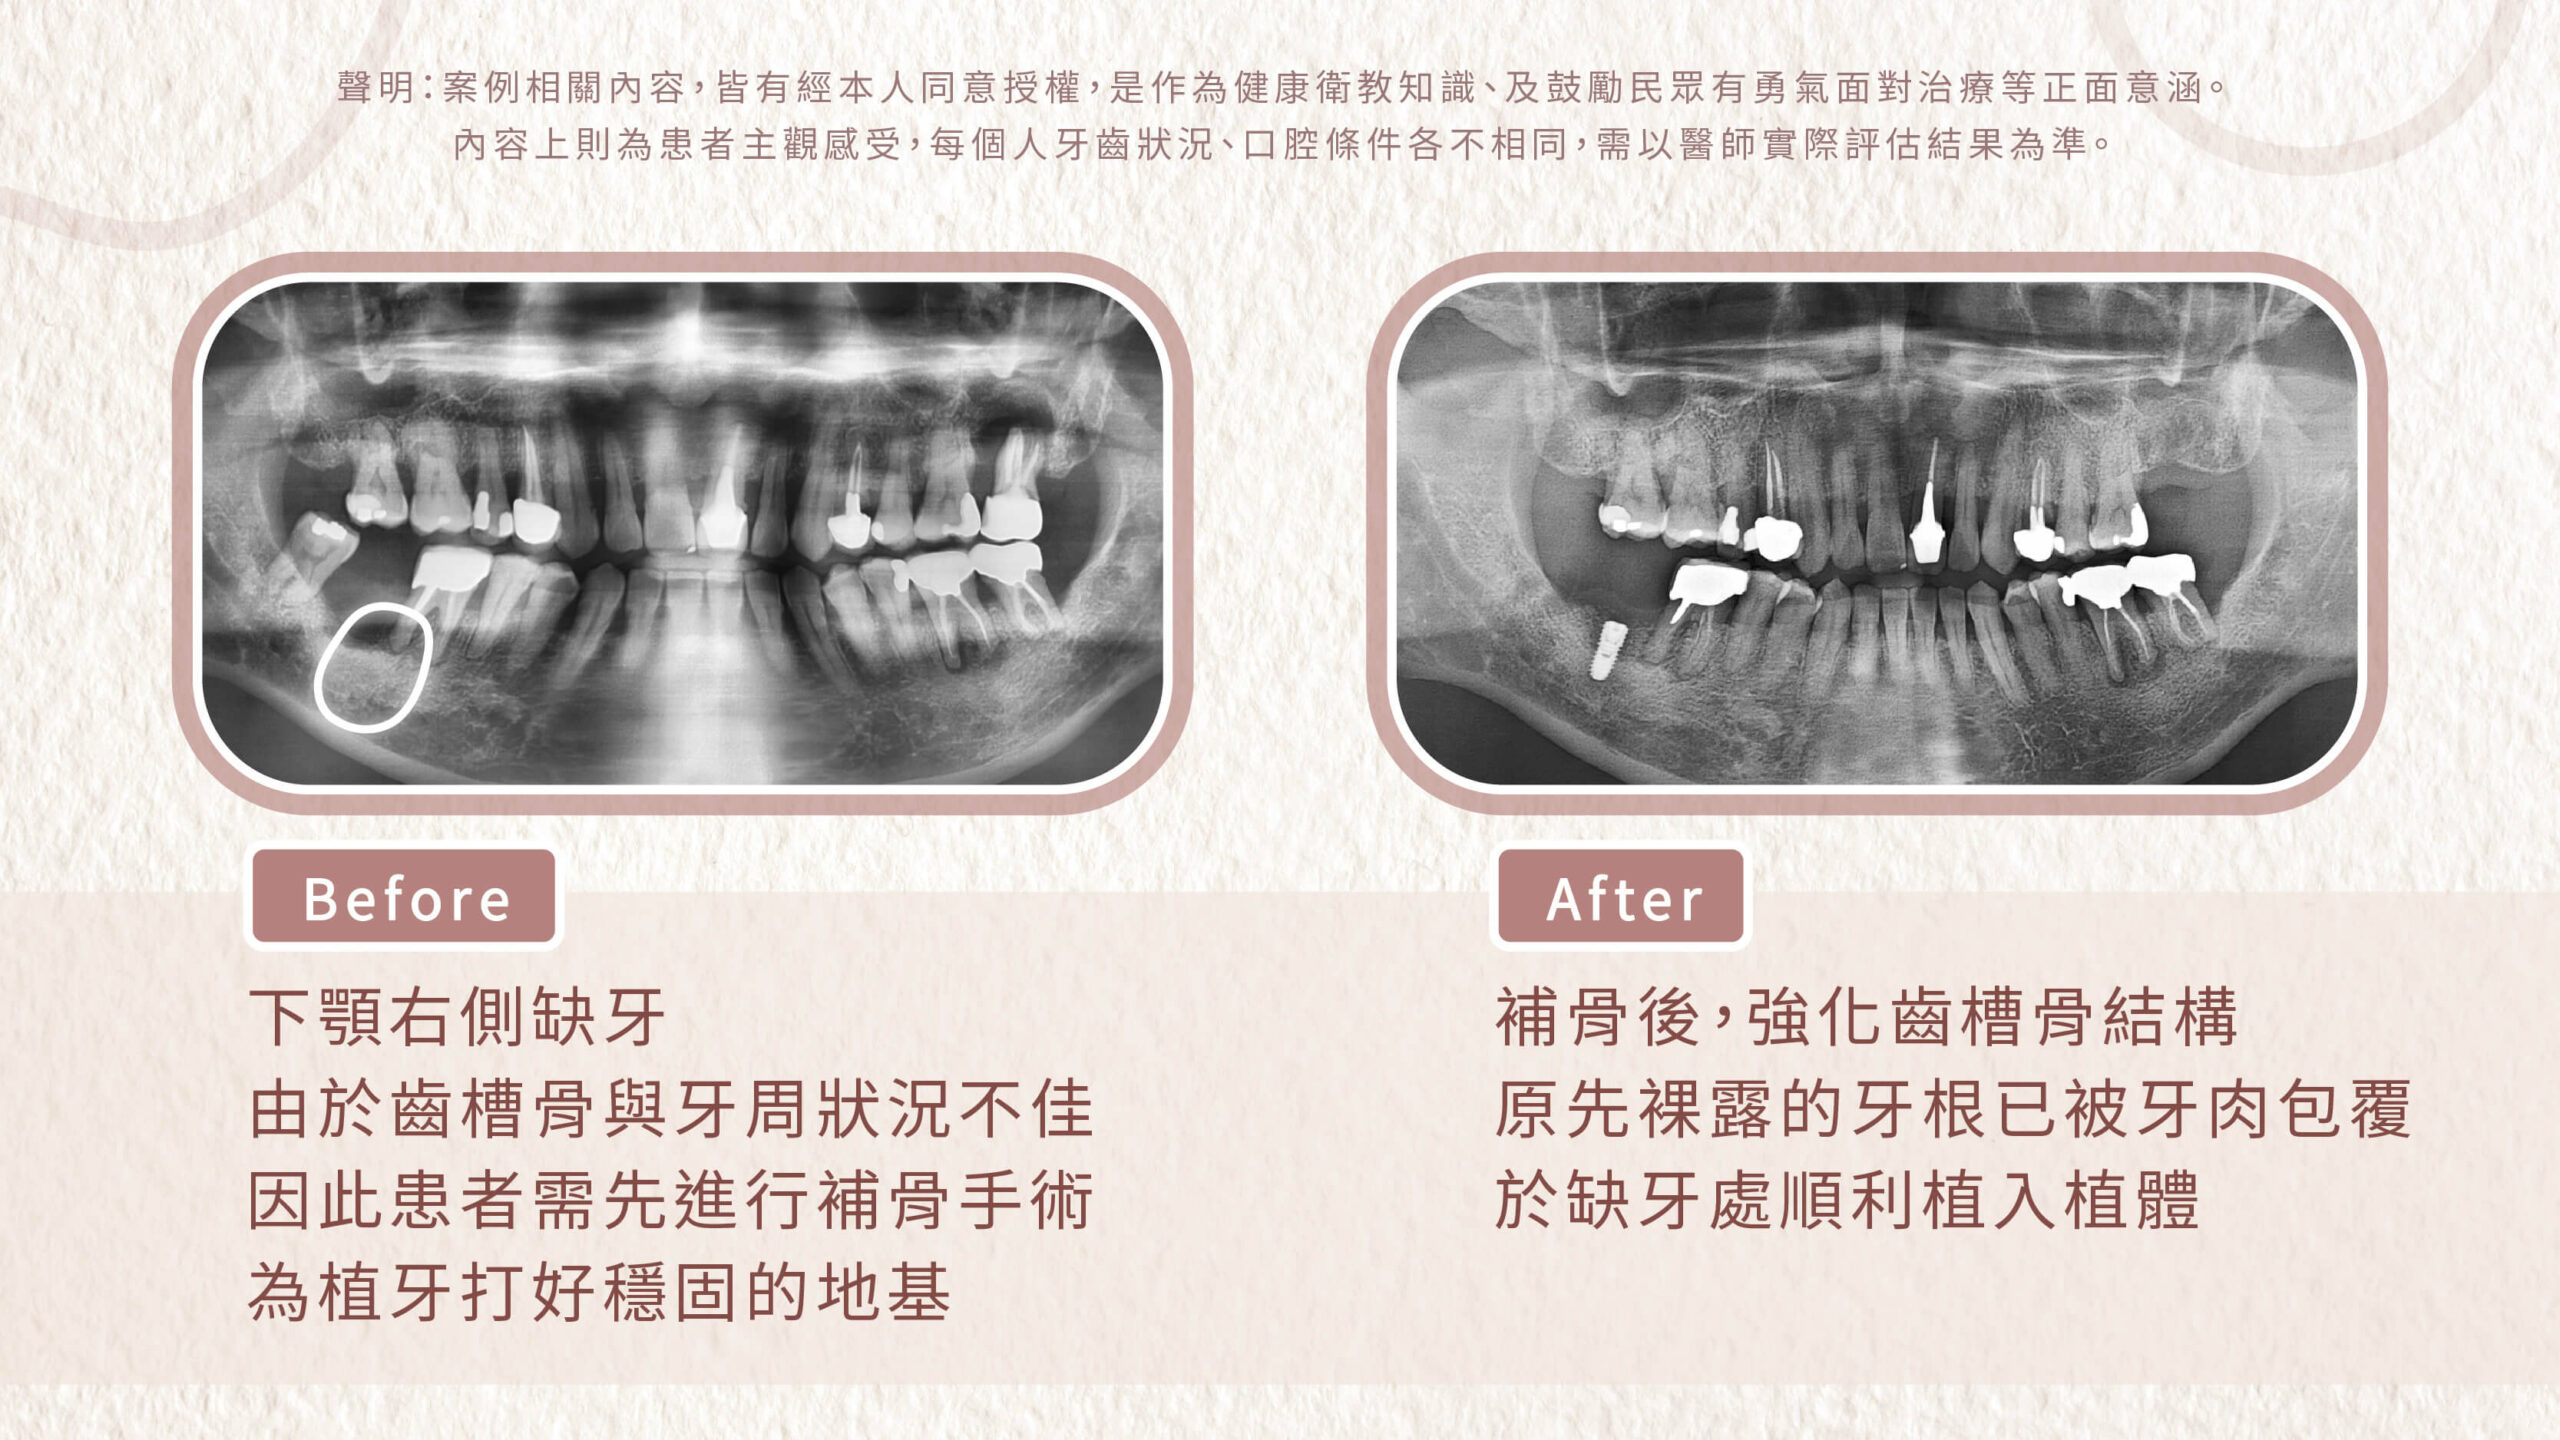 植牙前先進行補骨手術來穩固牙周地基